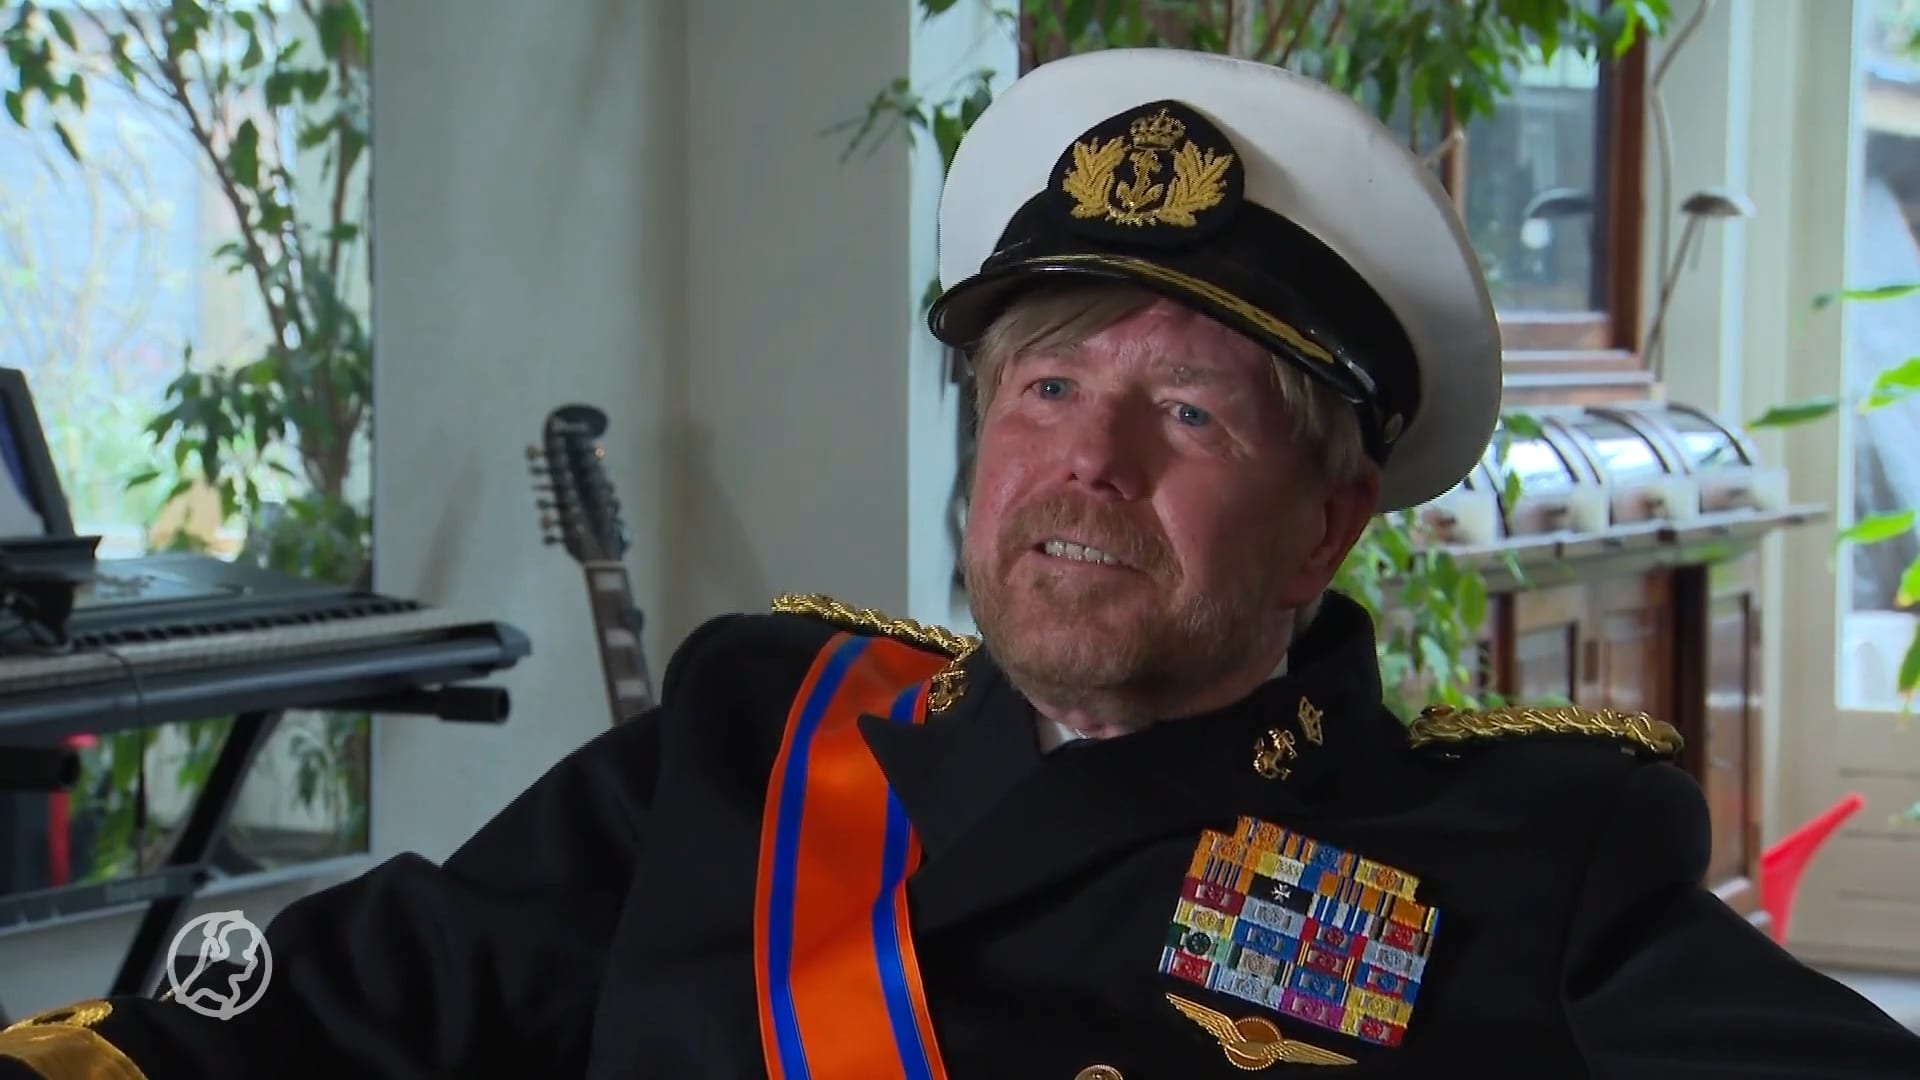 Joop imiteert al 22 jaar koning Willem-Alexander: 'Ik vind het een prima man'